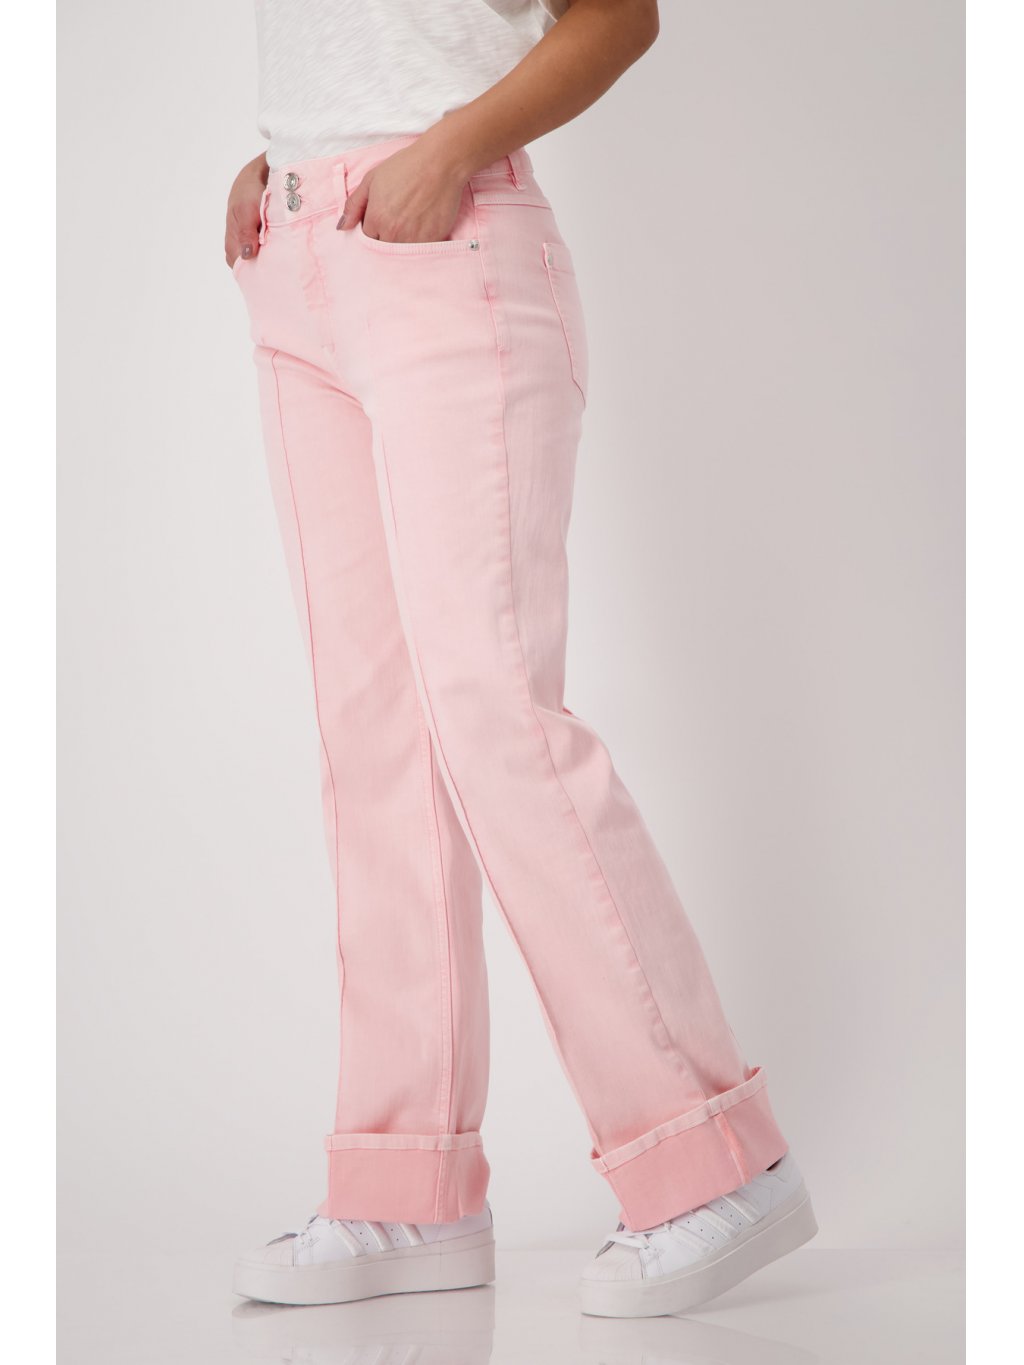 Kalhoty Monari 8314 růžové širokého střihu s manžetami 